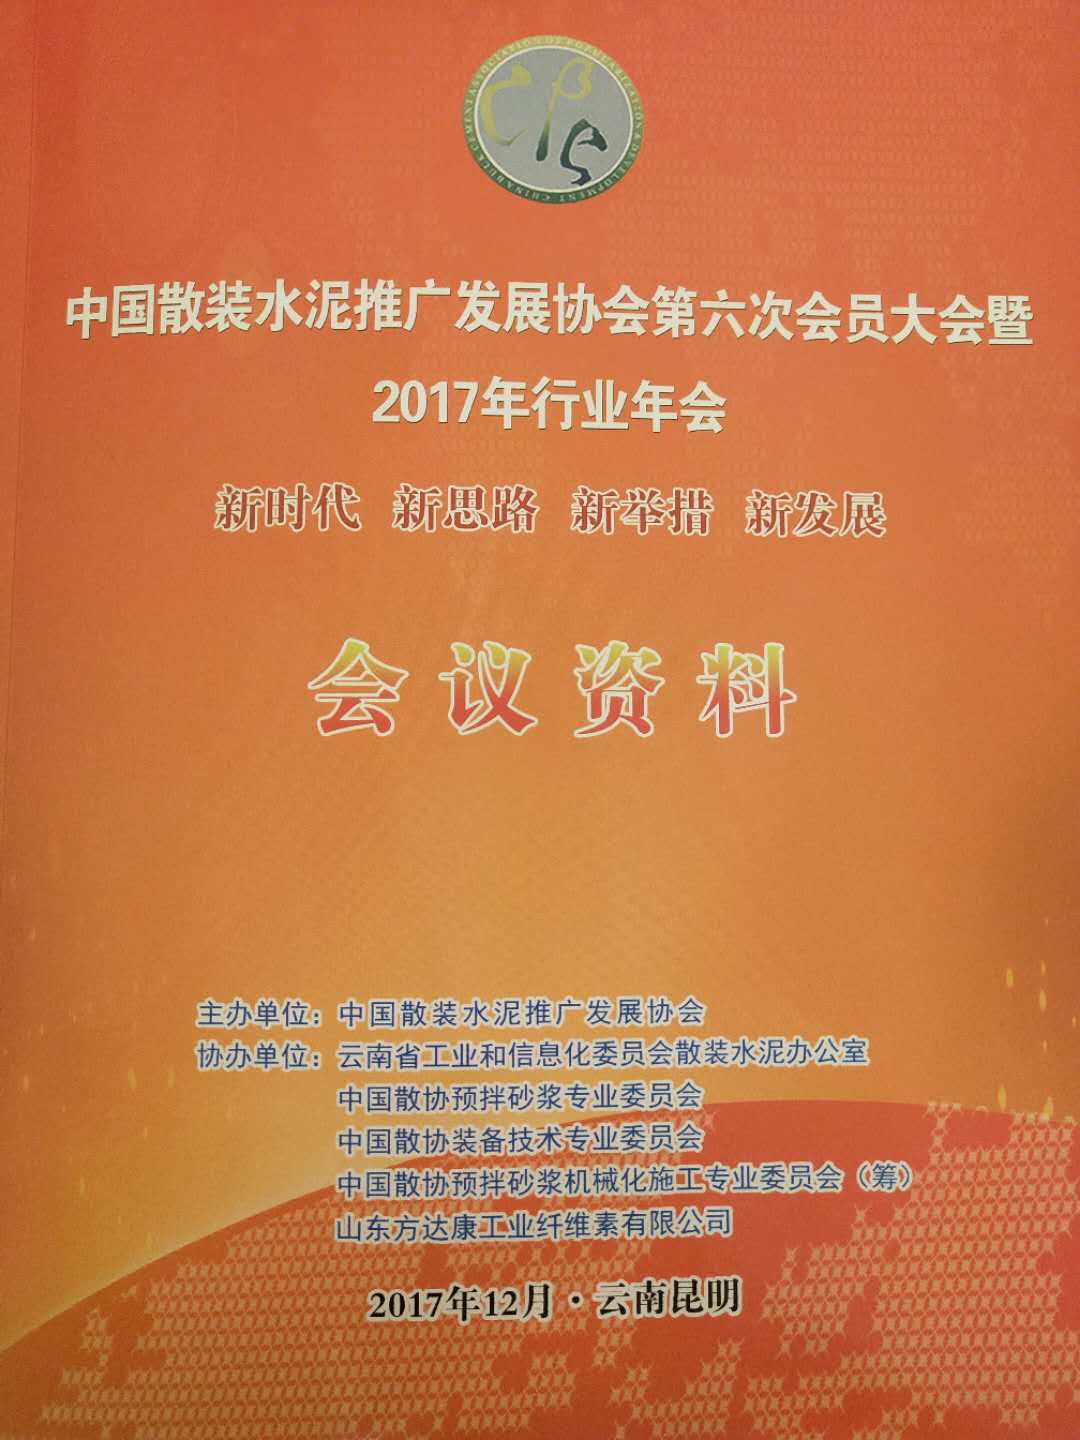 中國散裝水泥發展協會第六次會員大會在云南昆明成功召開